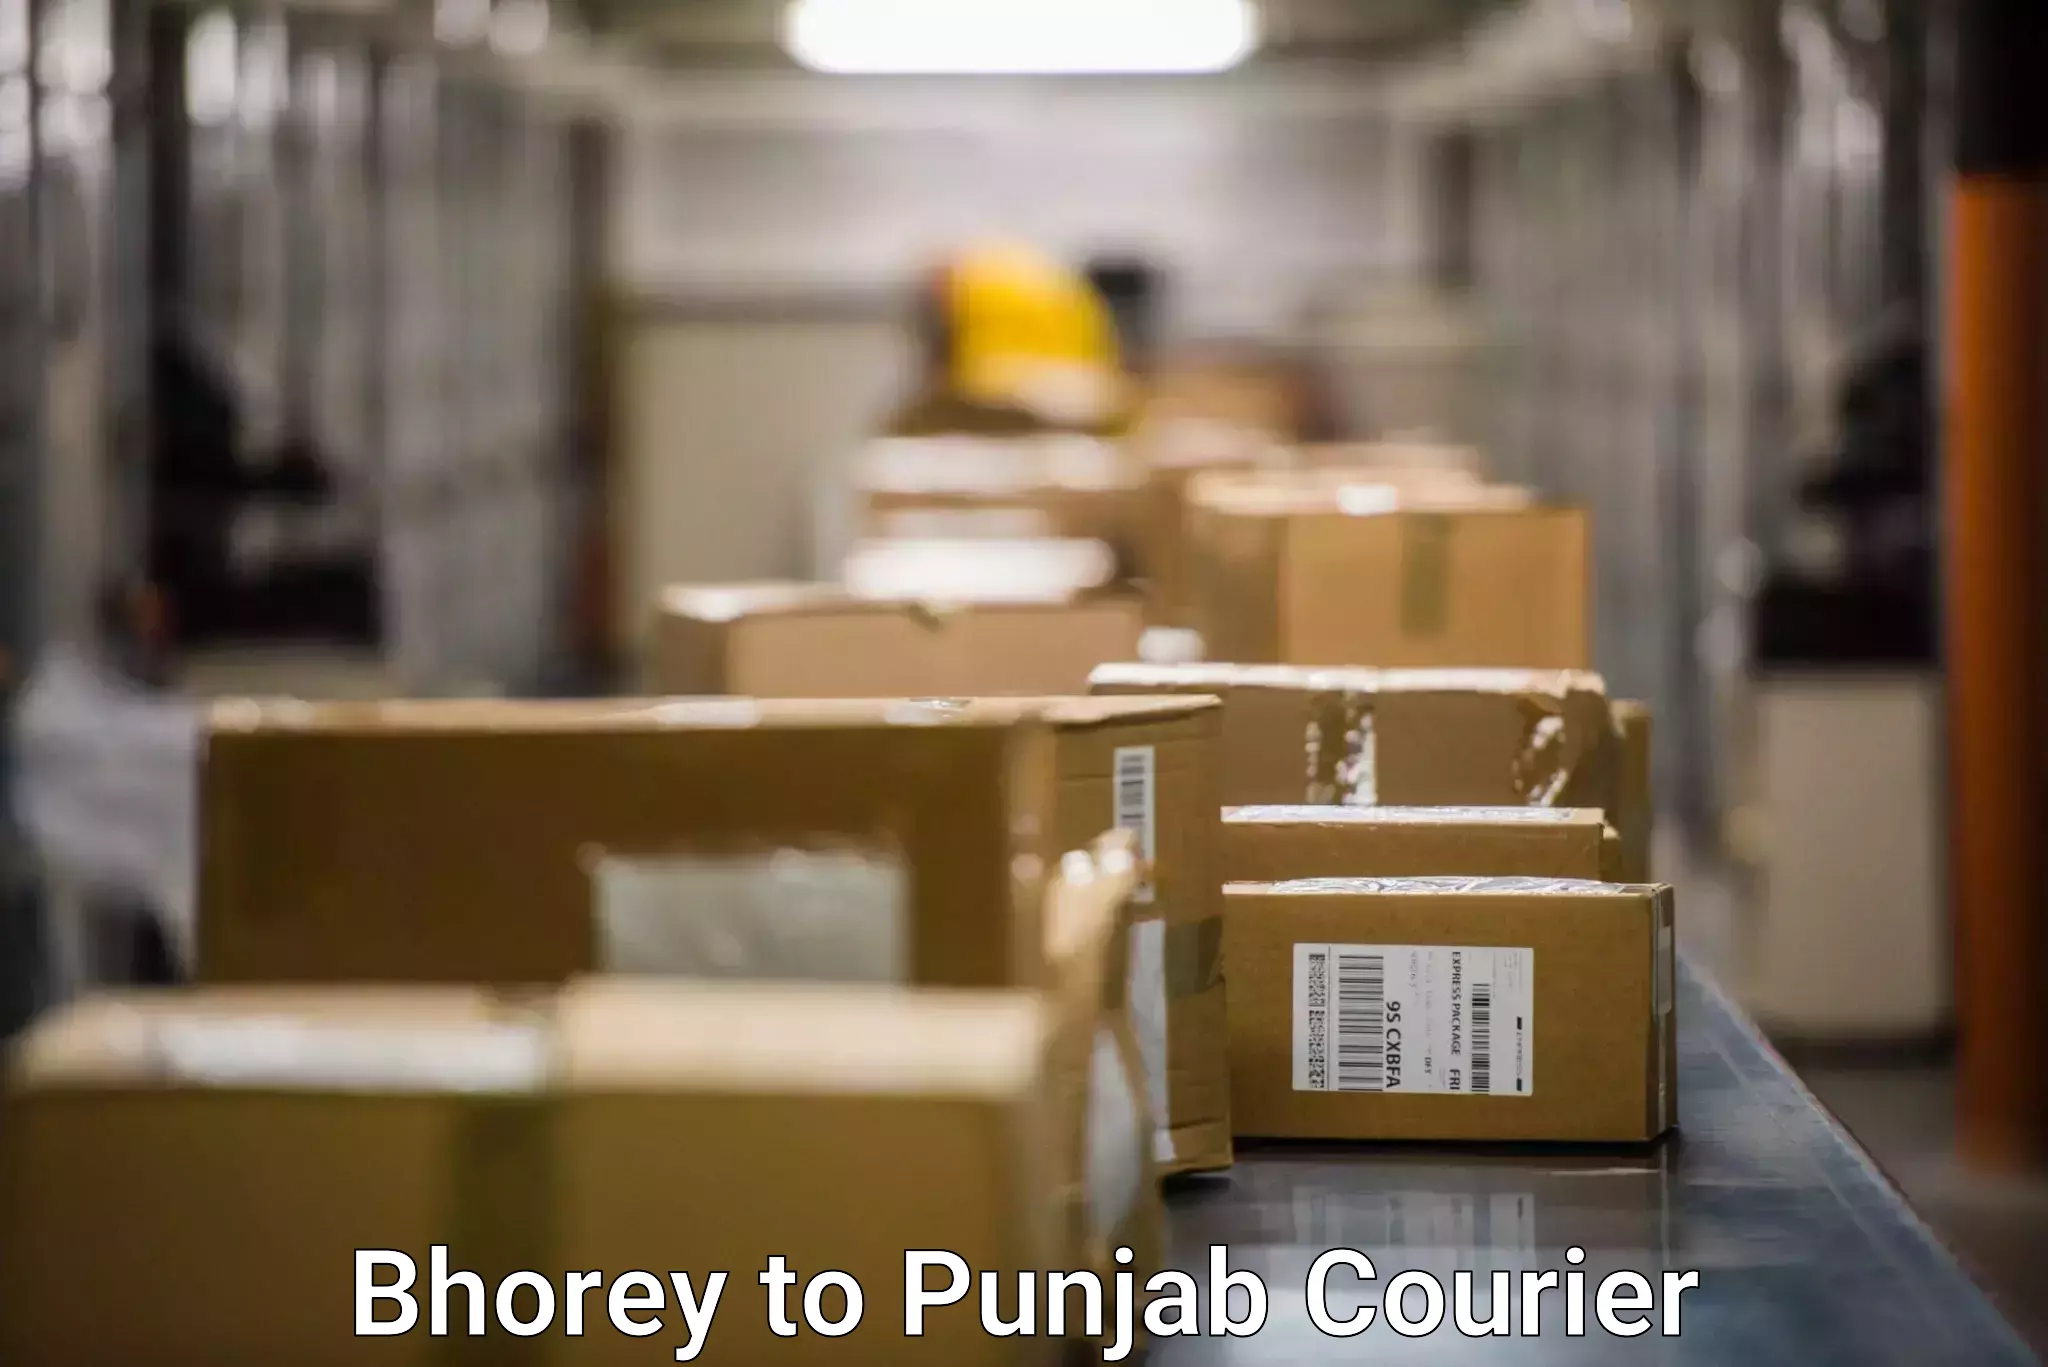 Shipping and handling Bhorey to Punjab